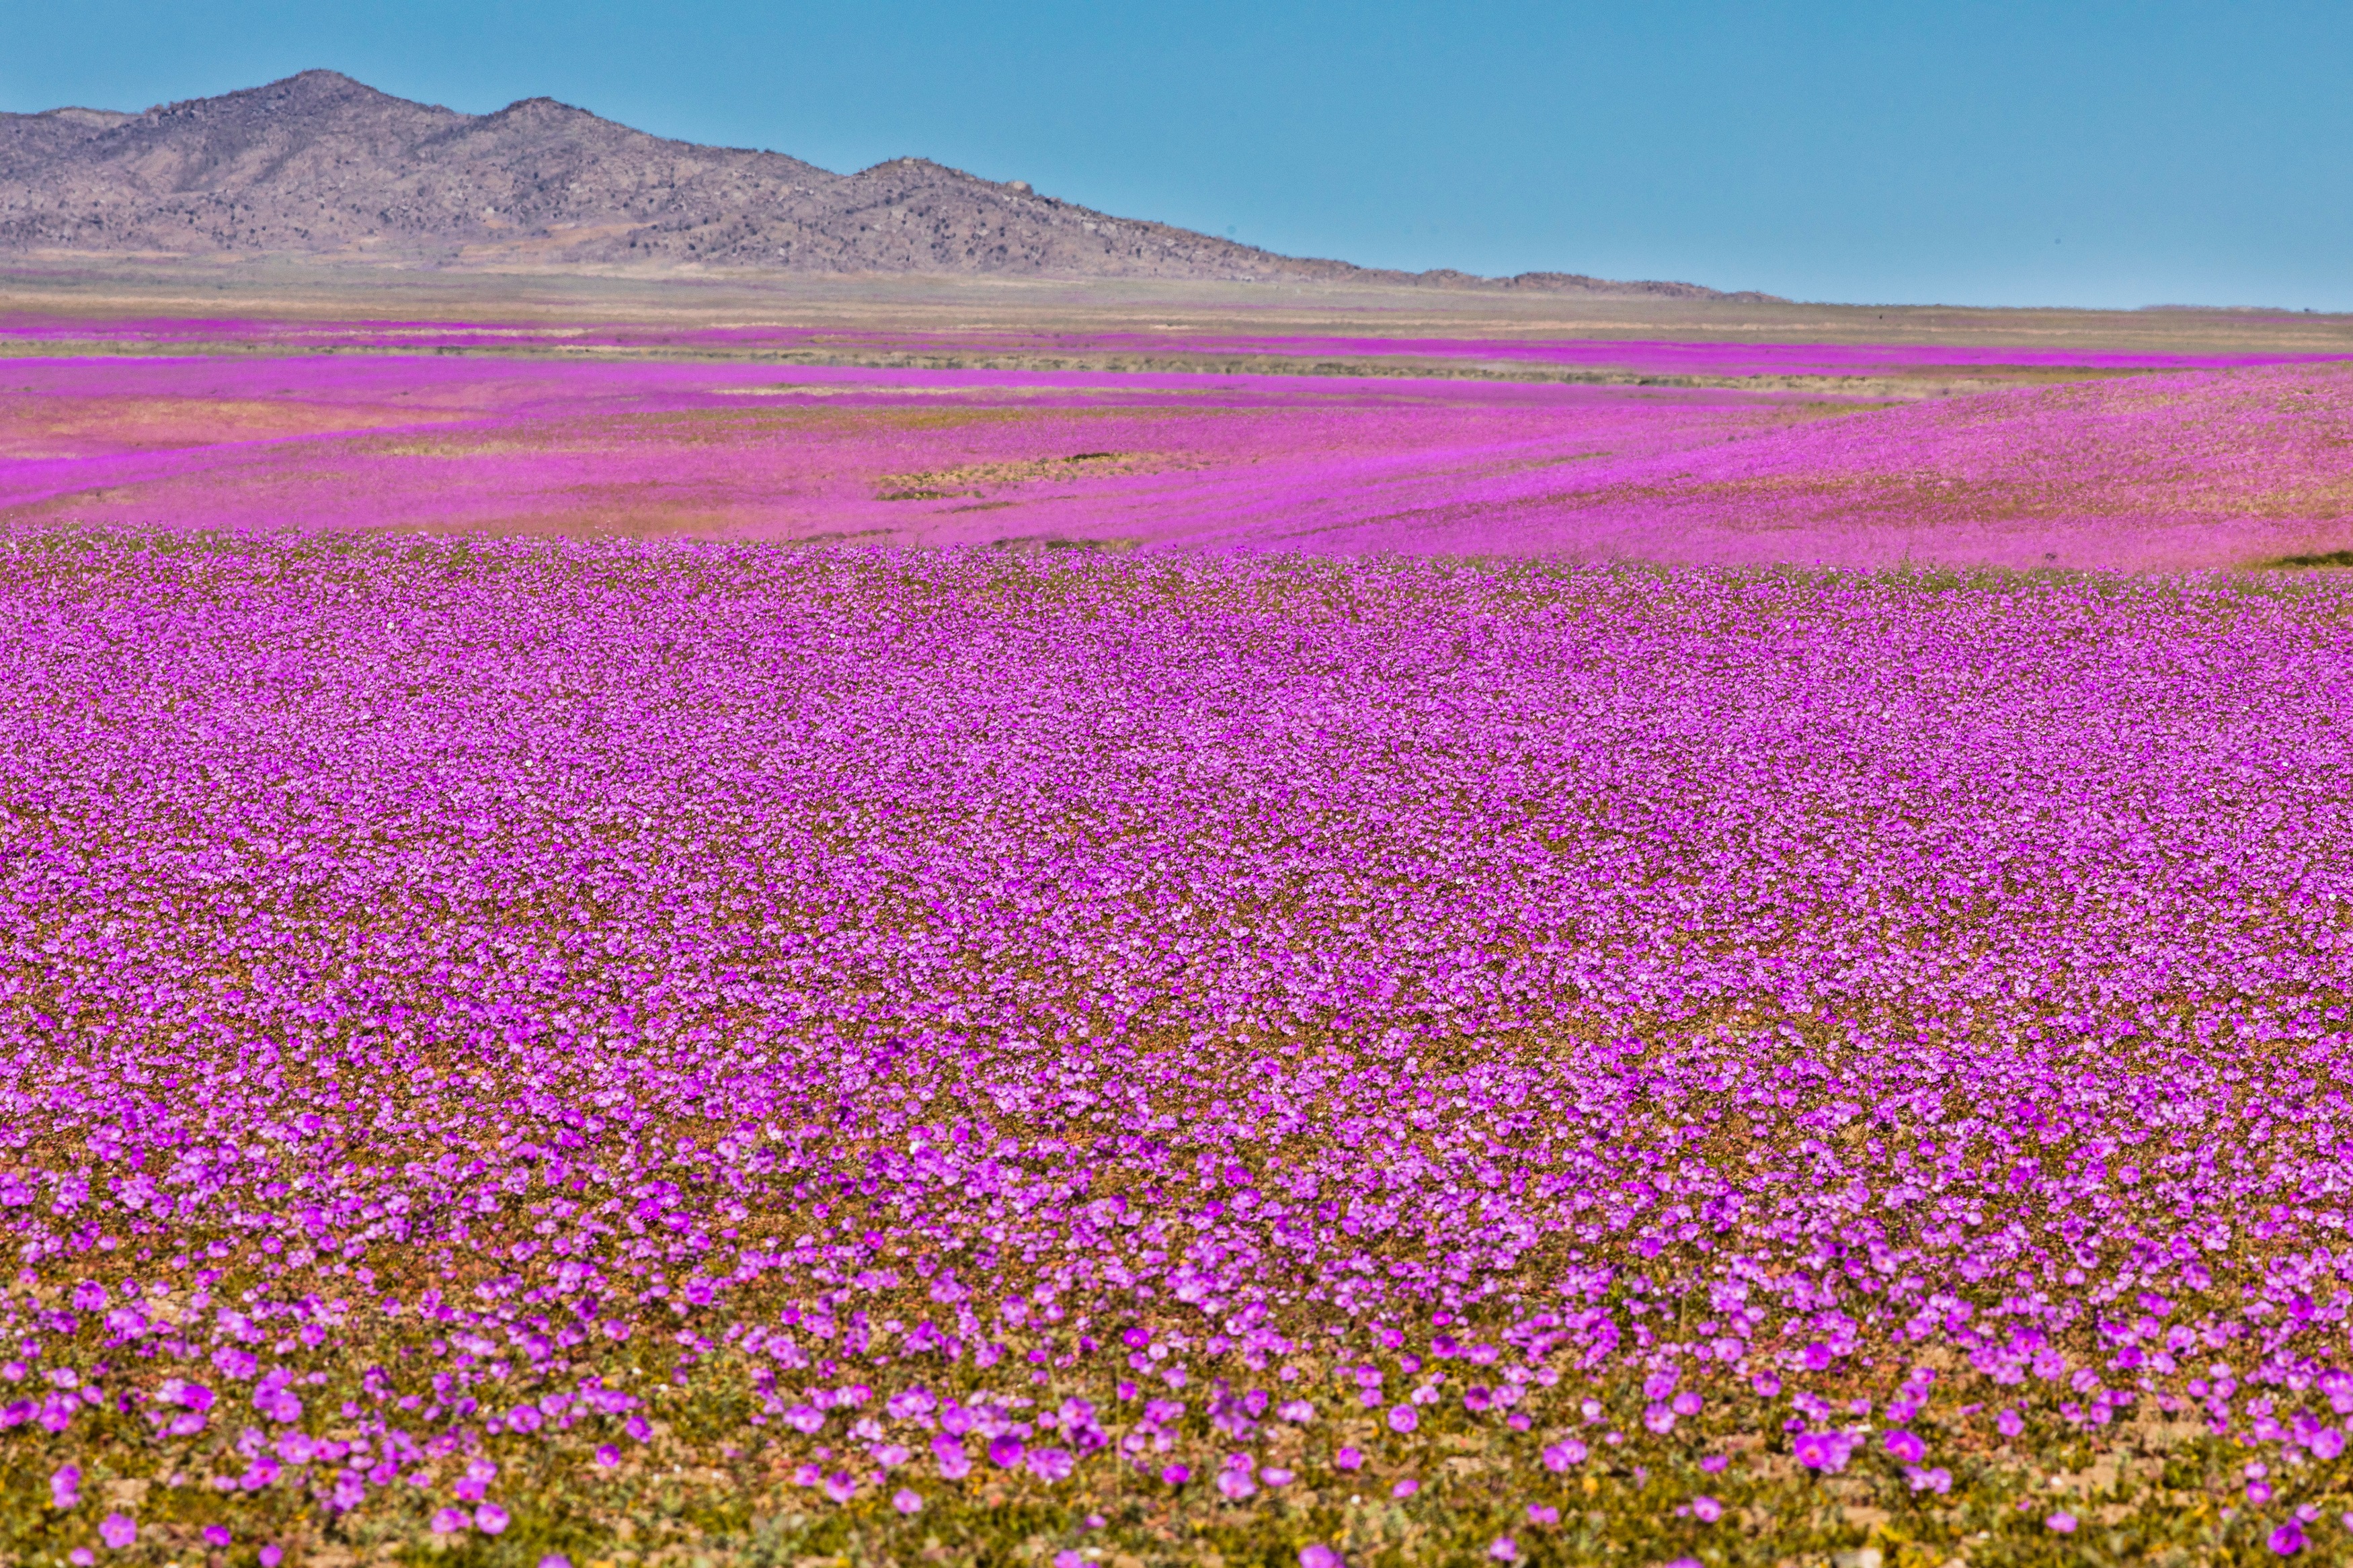 Le désert d'Atacama recouvert de fleurs violettes grâce aux pluies des derniers mois et à la présence du brouillard fréquent. © abriendomundo, Adobe Stock